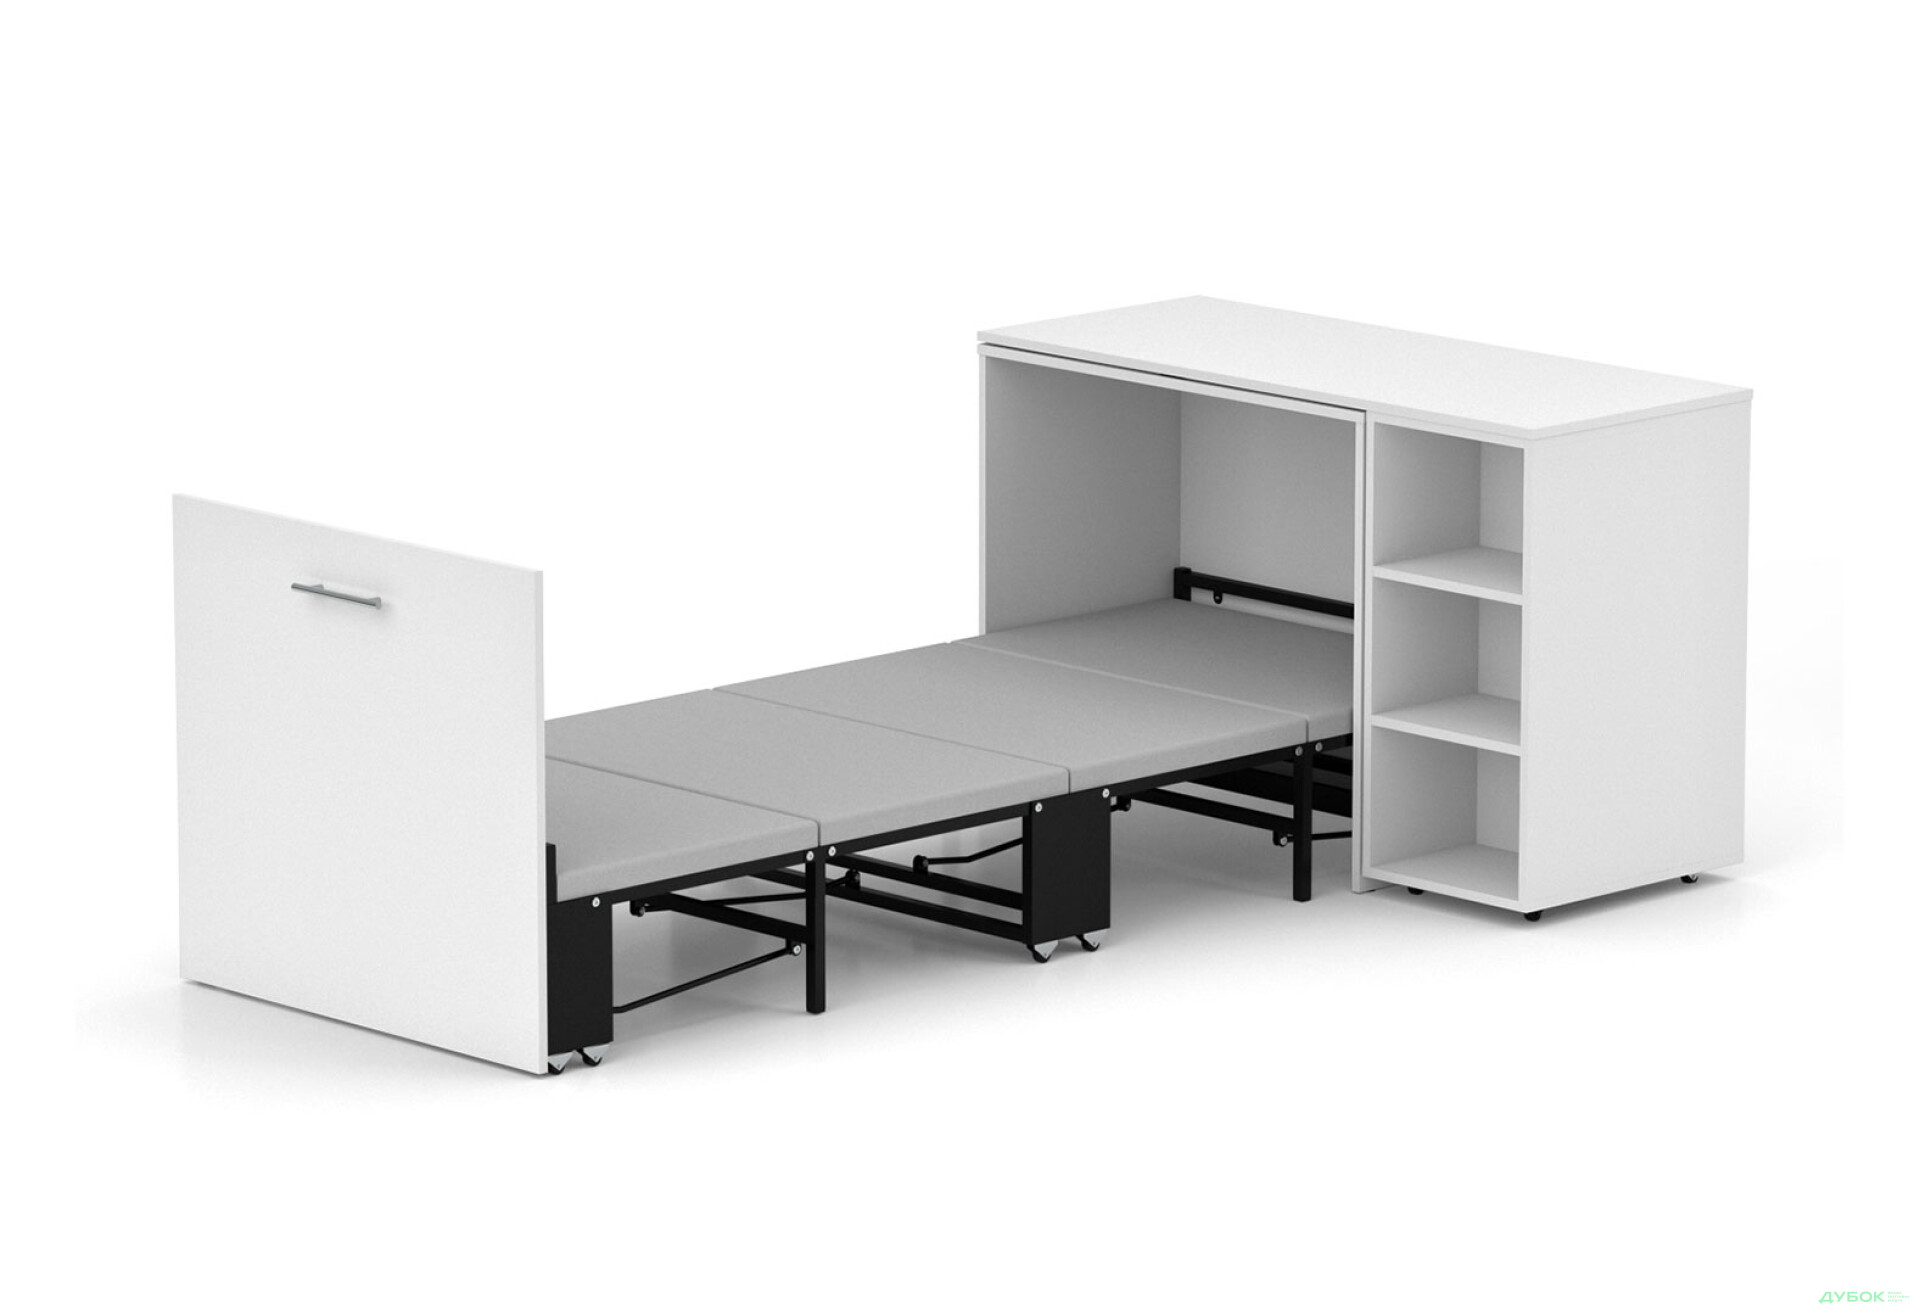 Фото 1 - Кровать-трансформер Knap Knap Sirim / Сирим-C2 (4 в 1) 80х200 см со столом и полками, белый